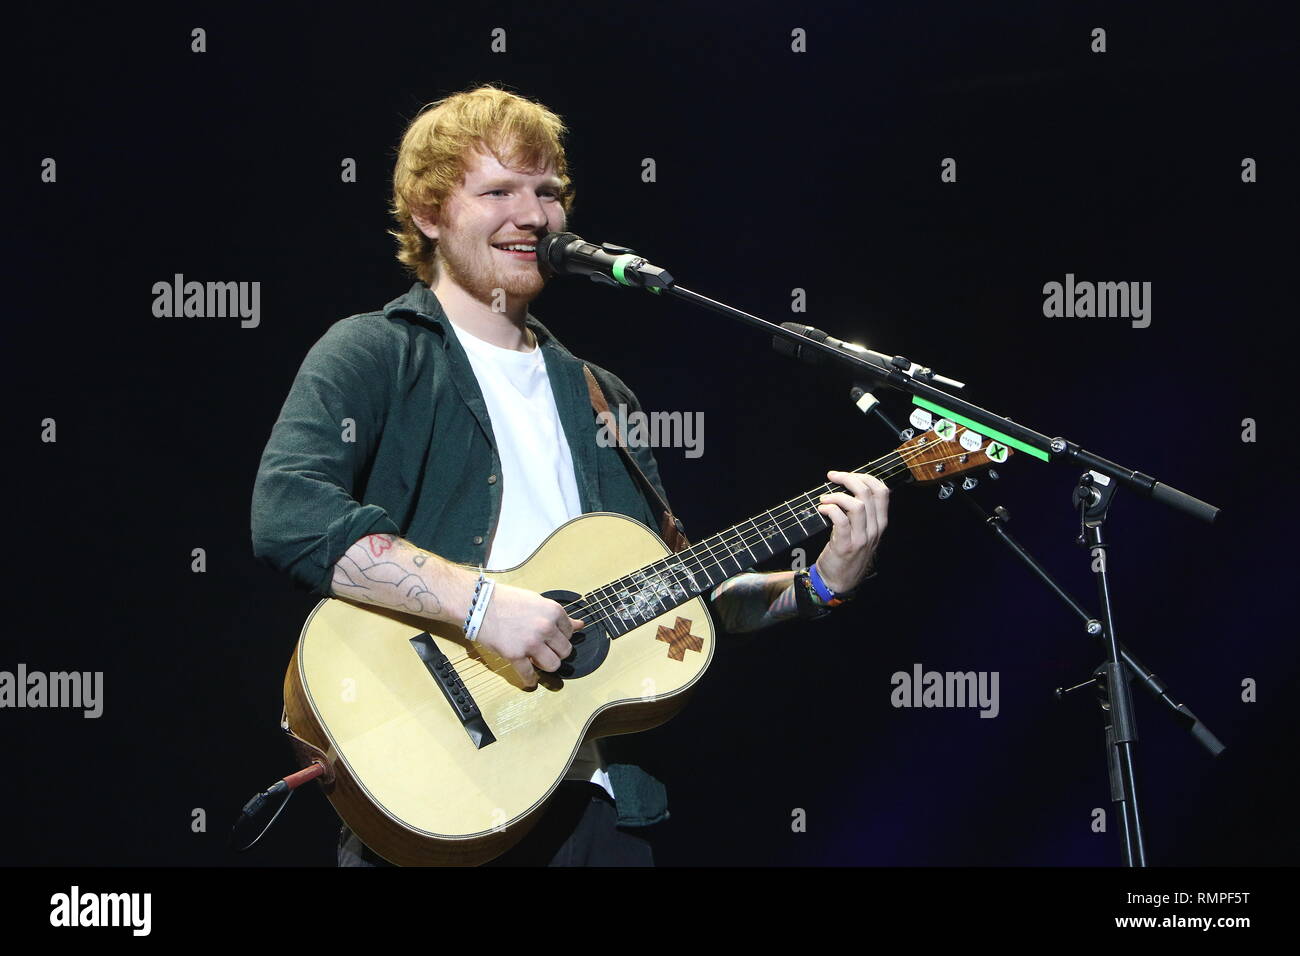 Sänger, Songwriter und Gitarrist Ed sheeran dargestellt auf der Bühne während einer "live"-Konzert aussehen. Stockfoto